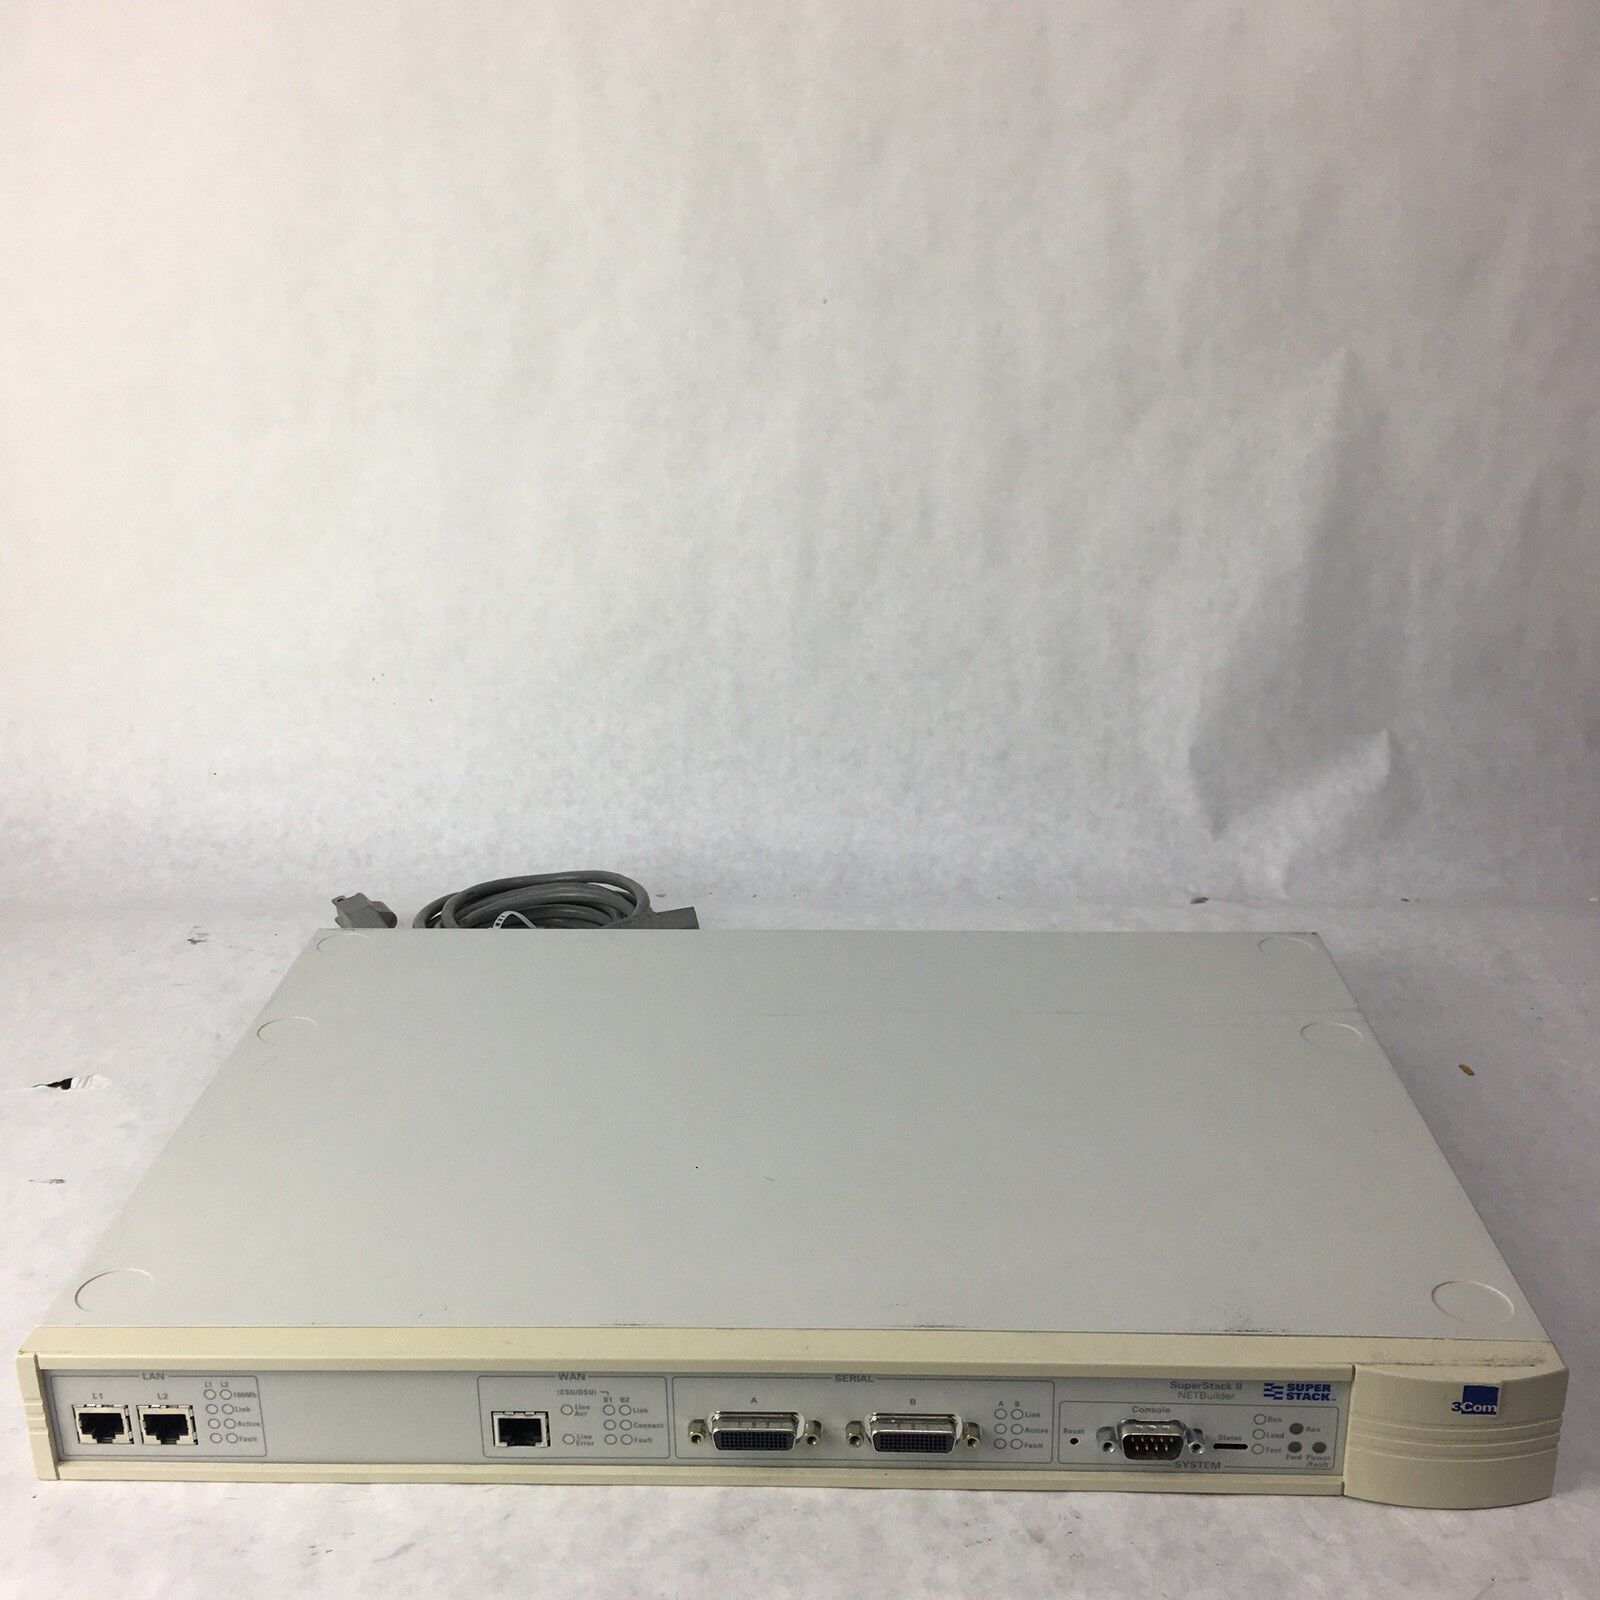 3Com SuperStack II NETBuilder, P/N: 3C8442, ESPL-341 Switch board